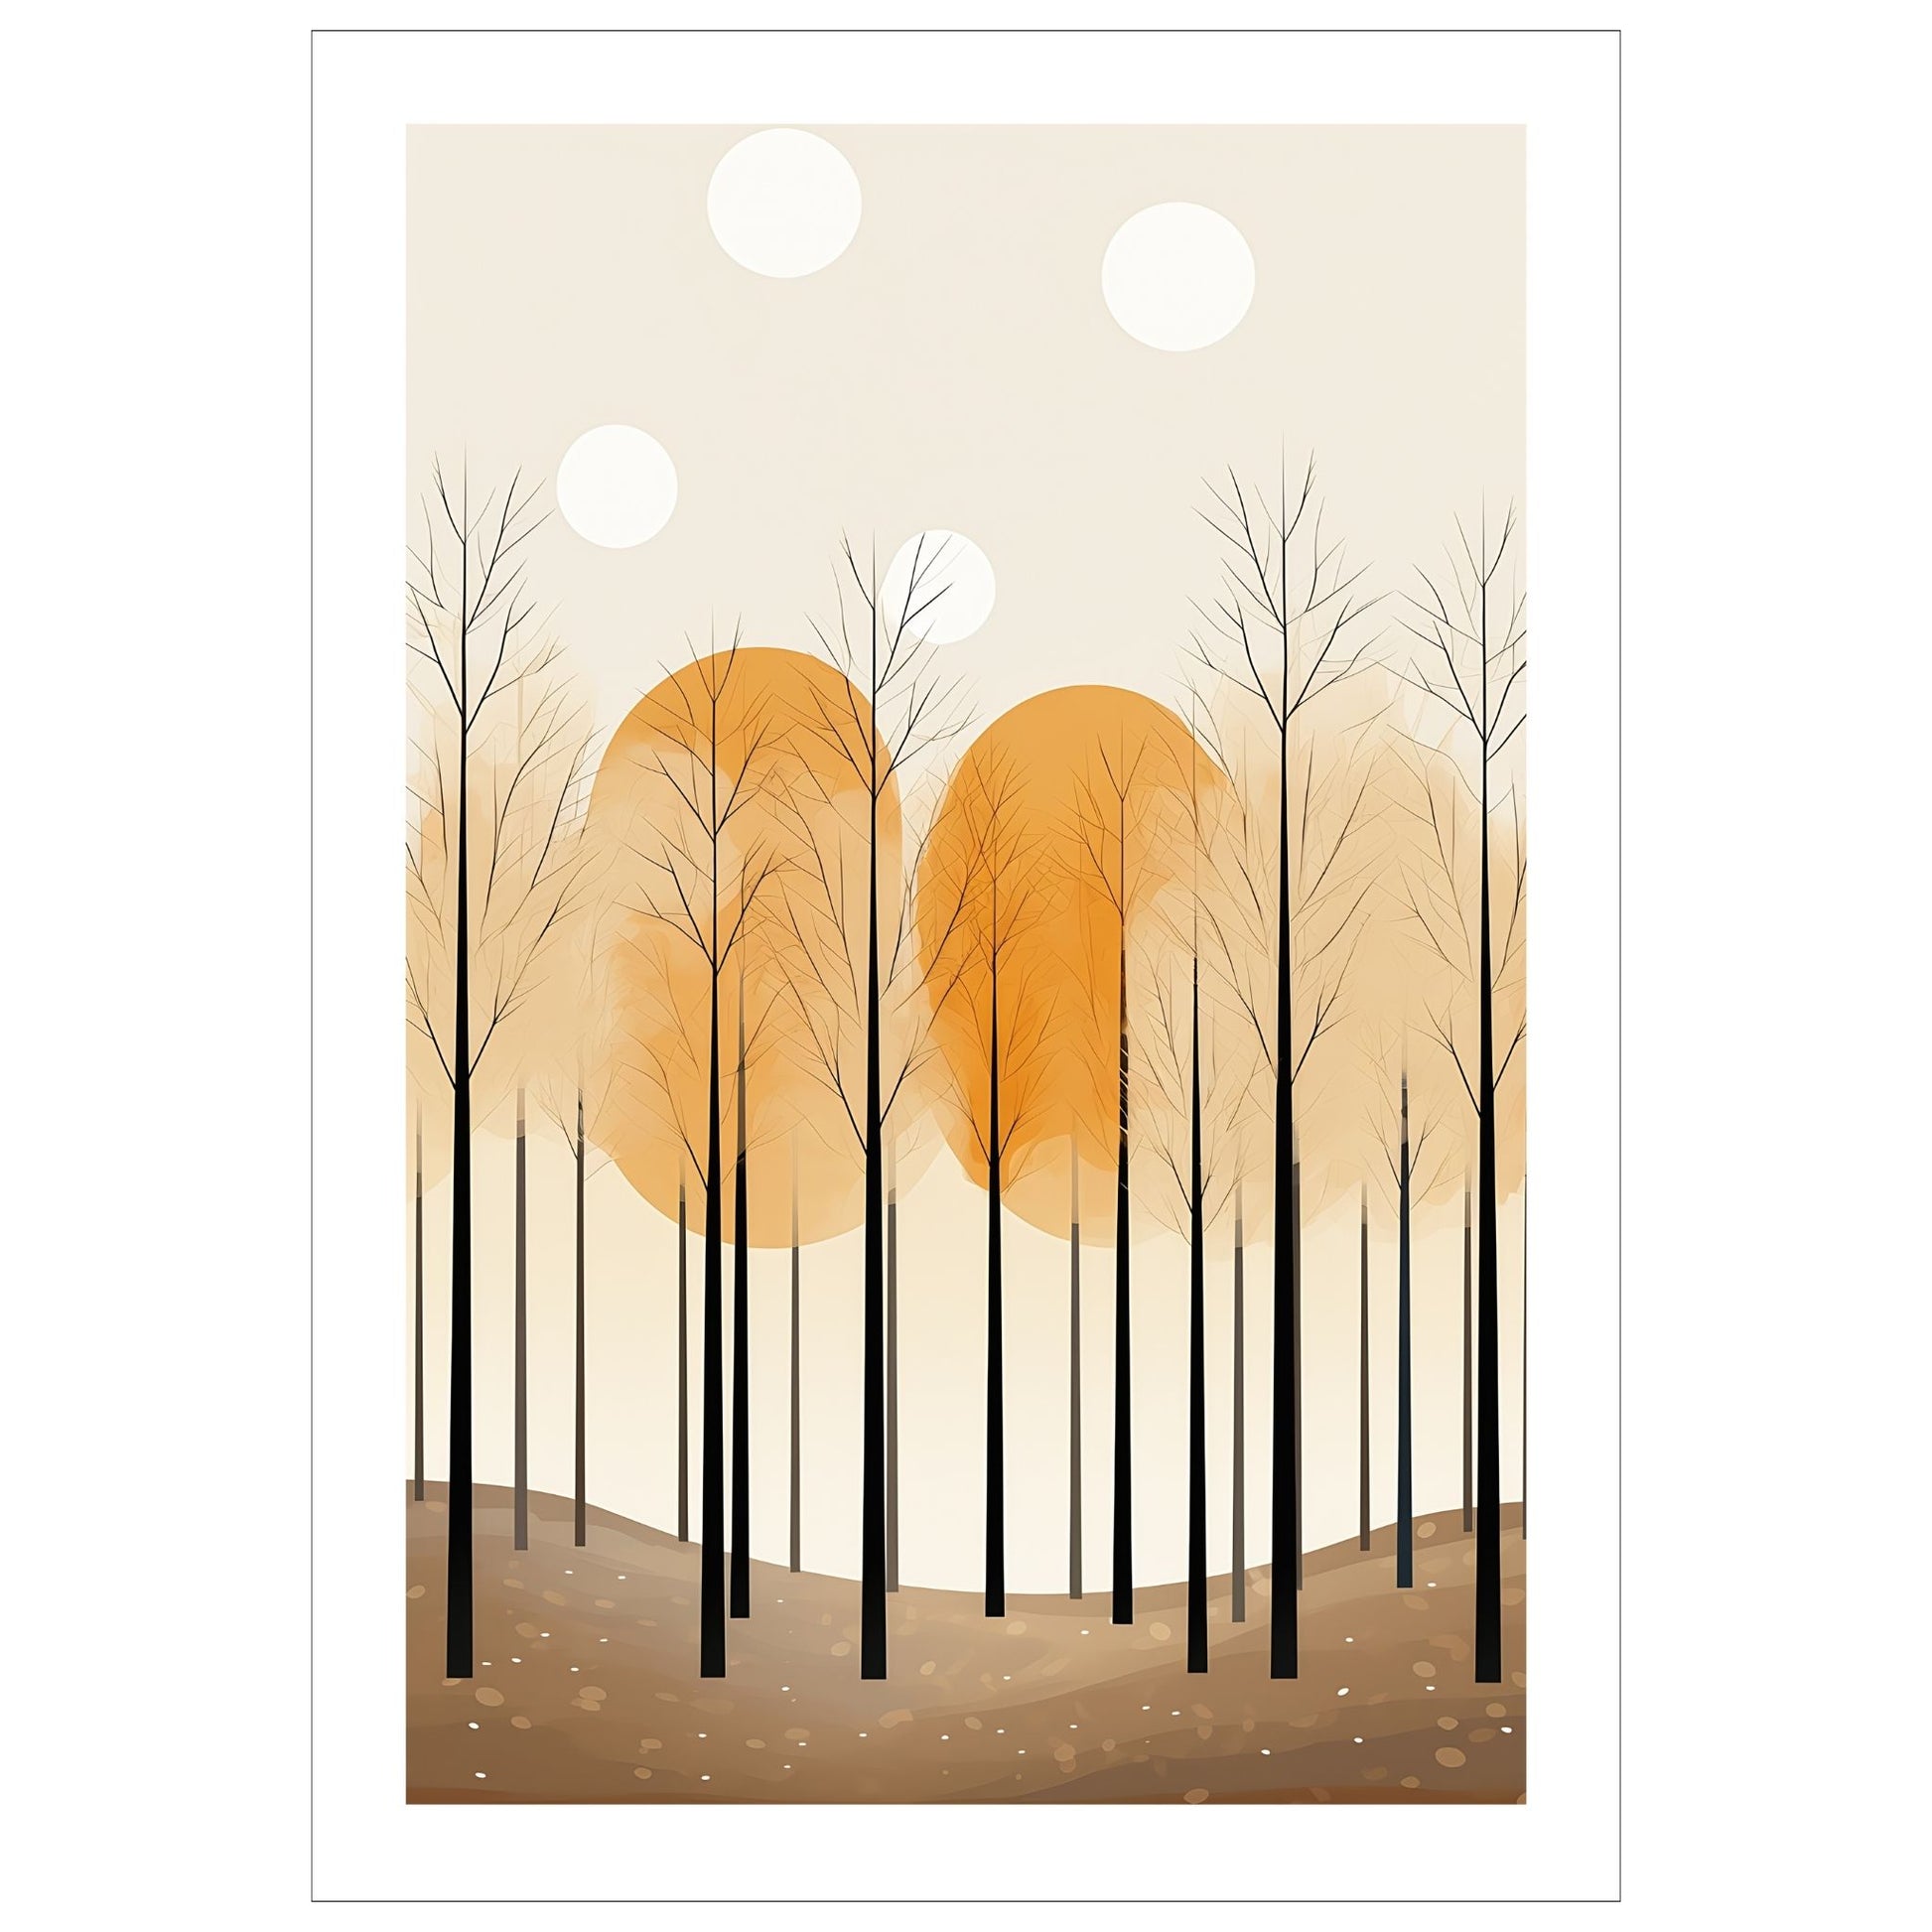 Abstract Forest - grafisk og abstrakt motiv av høye, slanke trær og skog i rust- og beige fargetoner